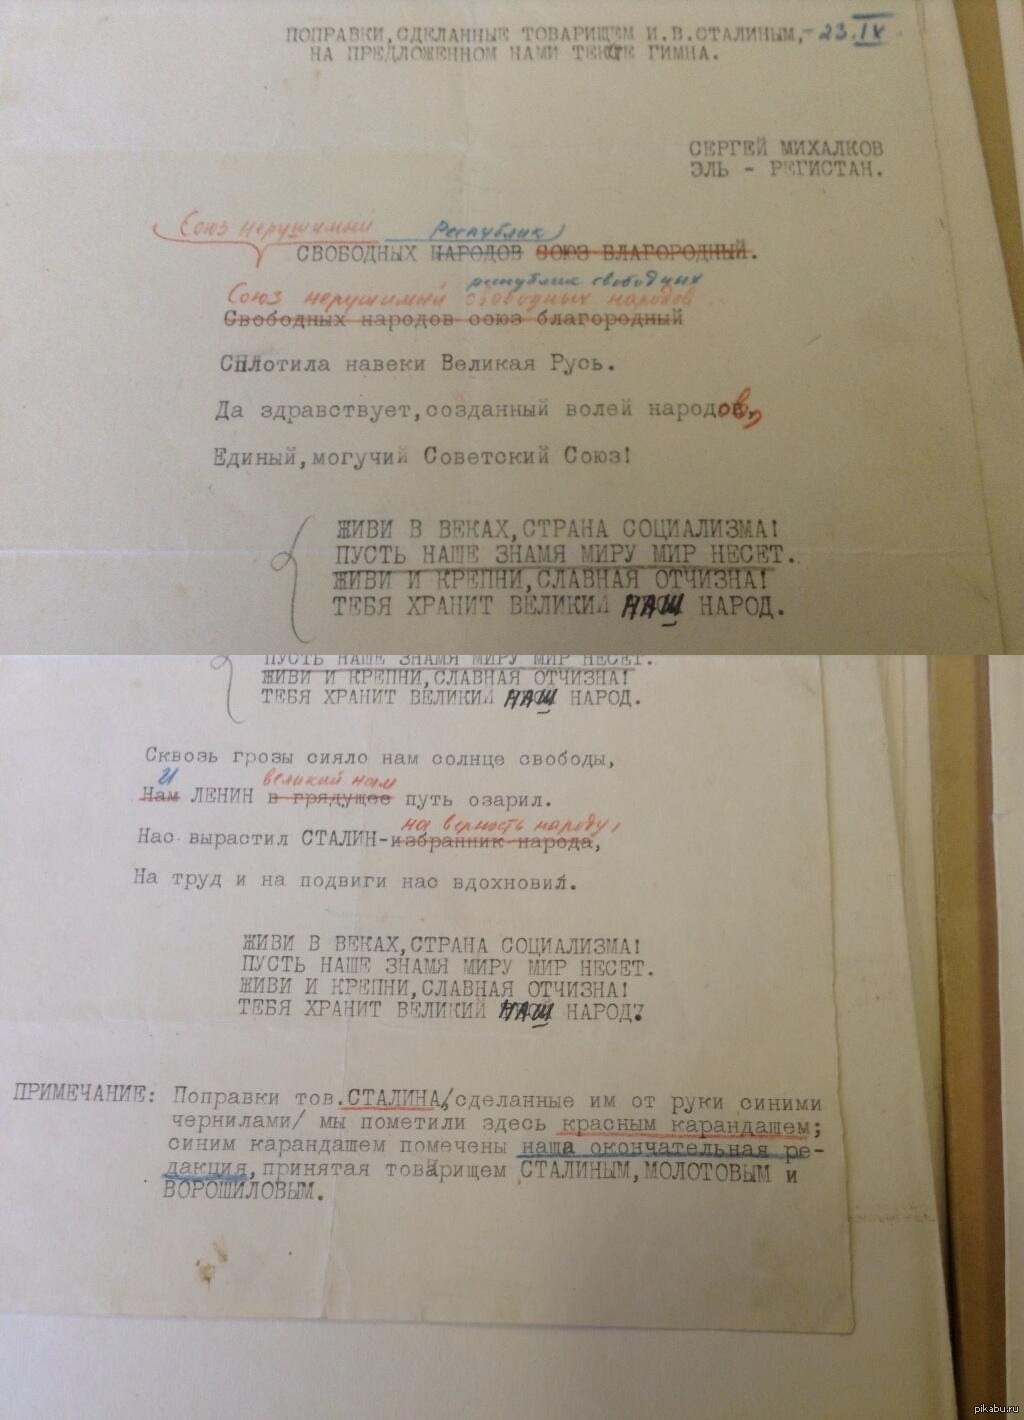 Правки И. В. Сталина к тексту гимна Михалкова и Регистана, сентябрь 1943 г.